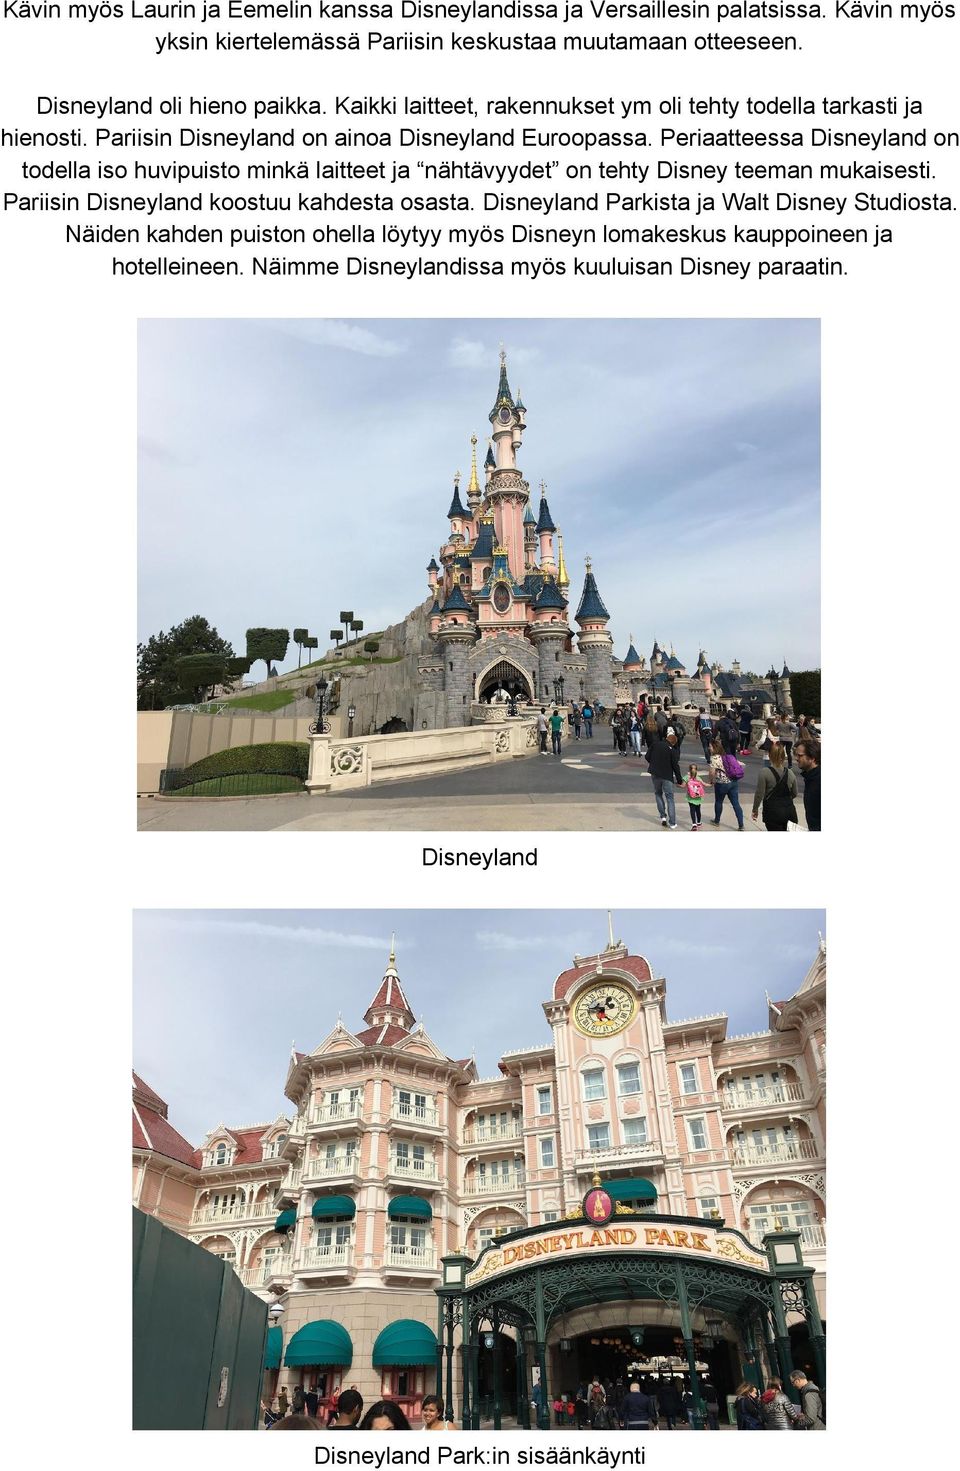 Periaatteessa Disneyland on todella iso huvipuisto minkä laitteet ja nähtävyydet on tehty Disney teeman mukaisesti. Pariisin Disneyland koostuu kahdesta osasta.